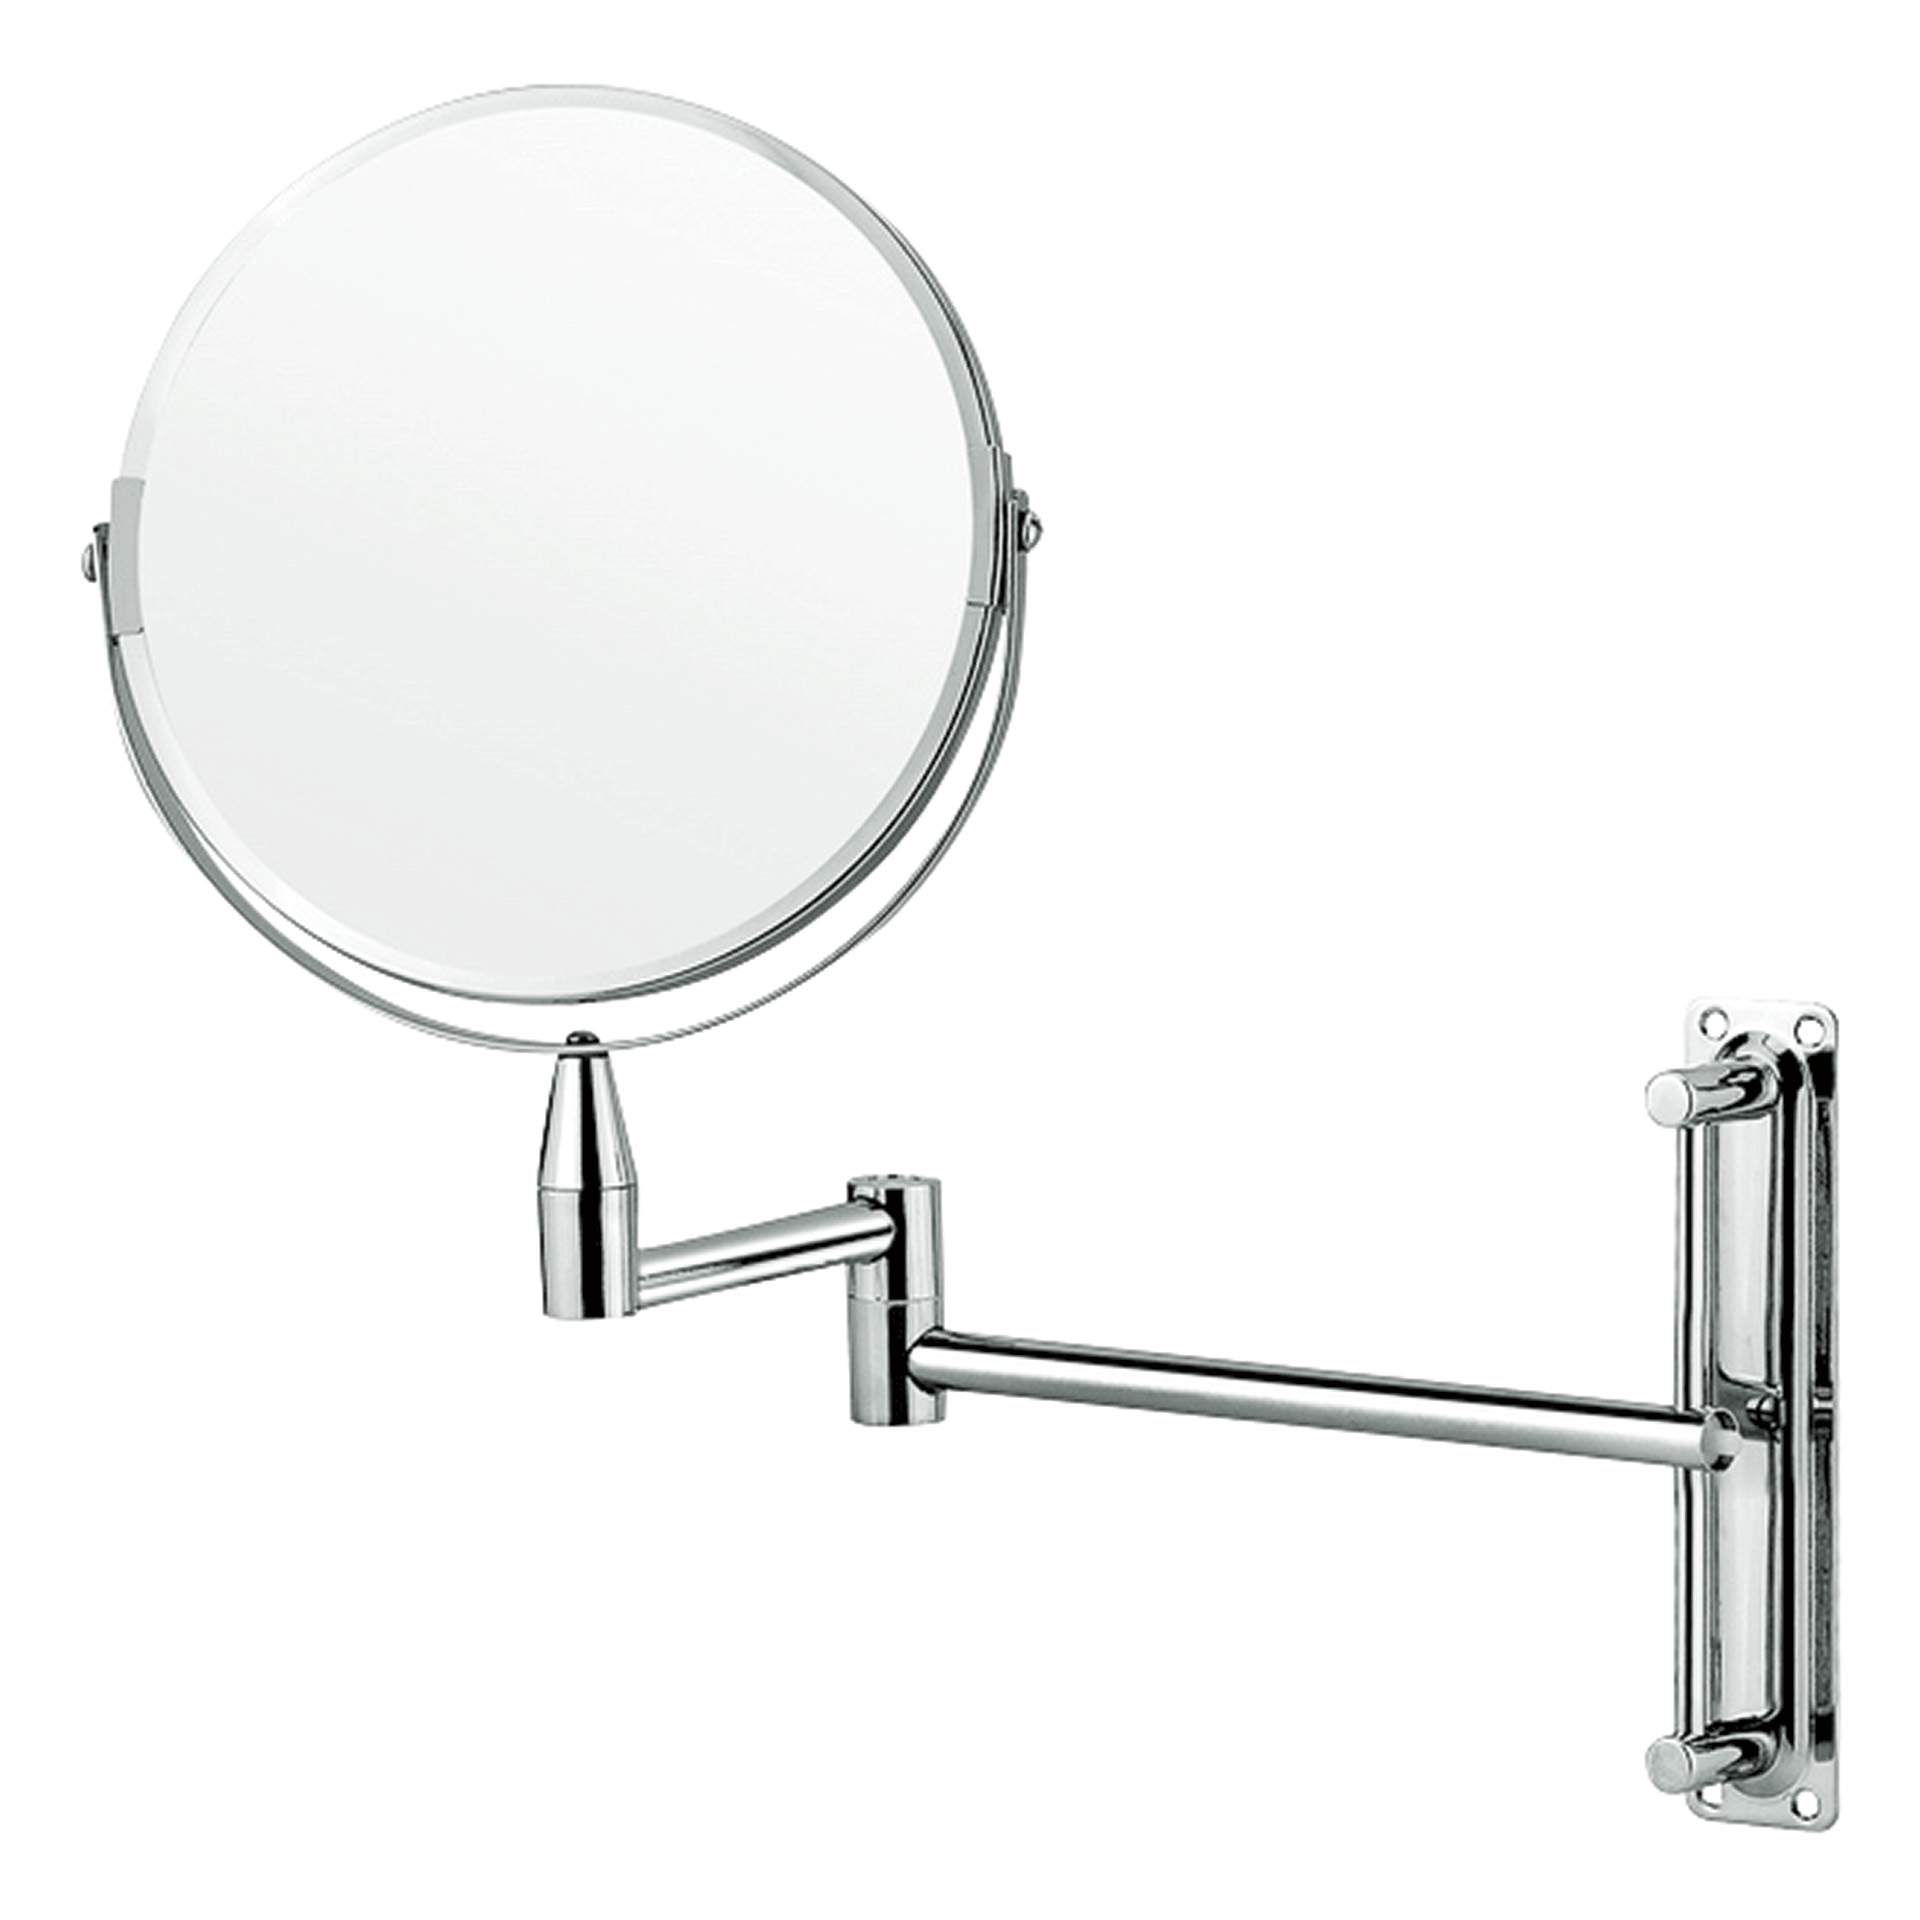 Kosmetikspiegel - für Wandmontage - Abm. 32 cm - Ø 20,0 cm - verchromt - 1117200-A